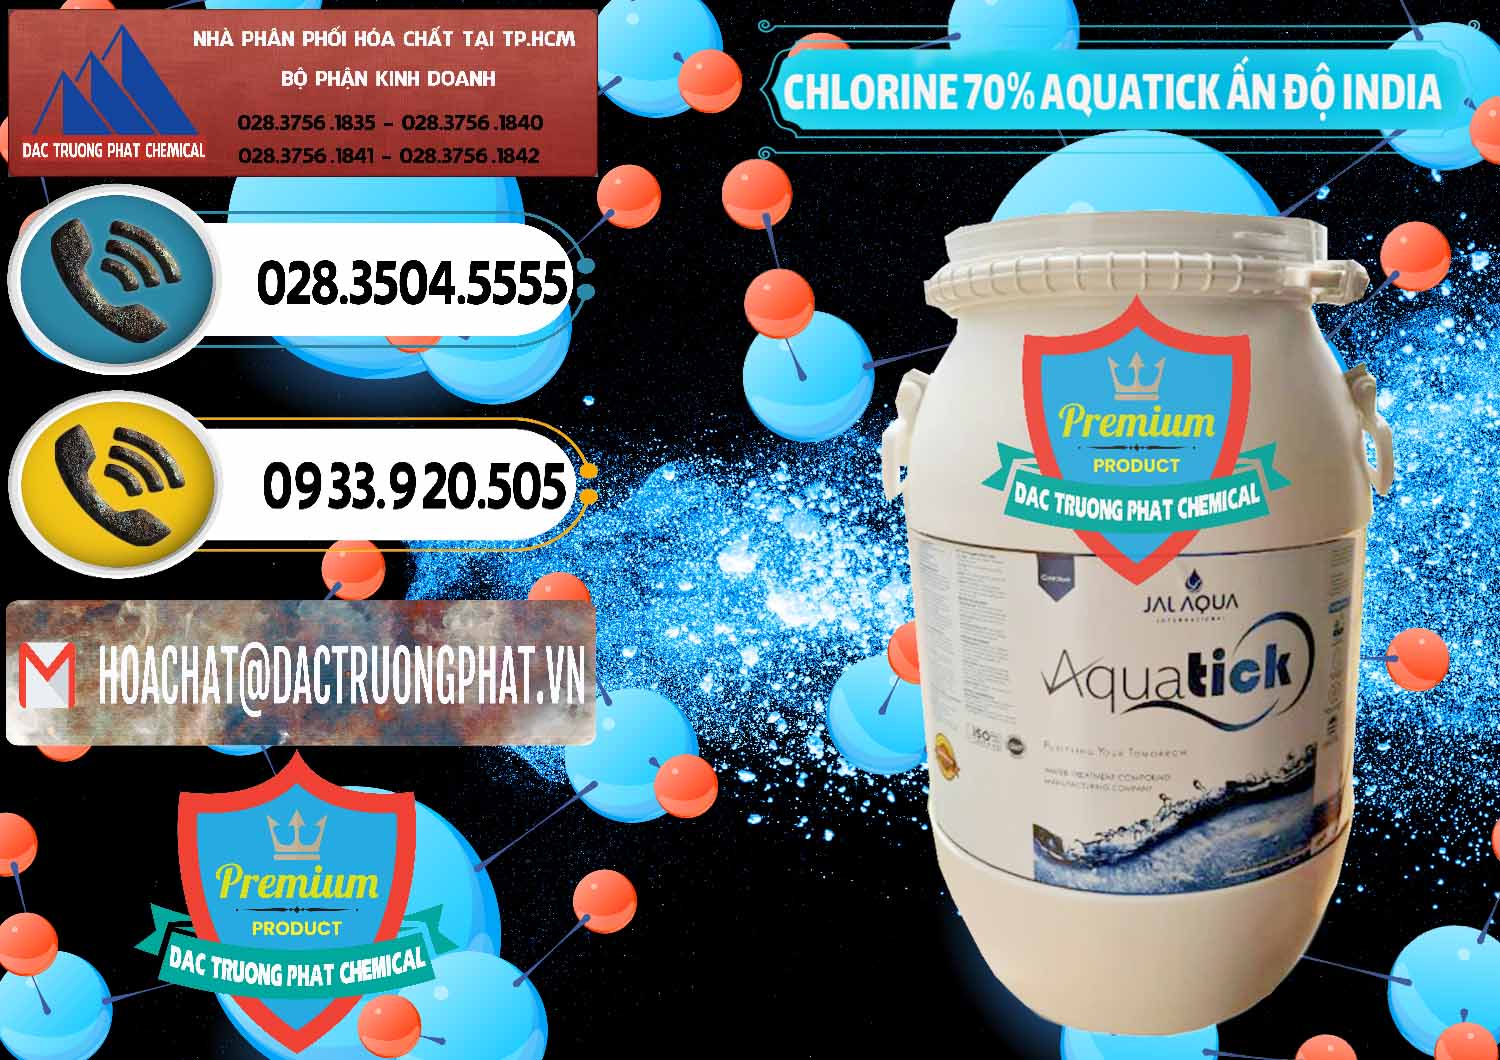 Đơn vị chuyên bán - phân phối Chlorine – Clorin 70% Aquatick Jal Aqua Ấn Độ India - 0215 - Công ty cung cấp - nhập khẩu hóa chất tại TP.HCM - hoachatdetnhuom.vn